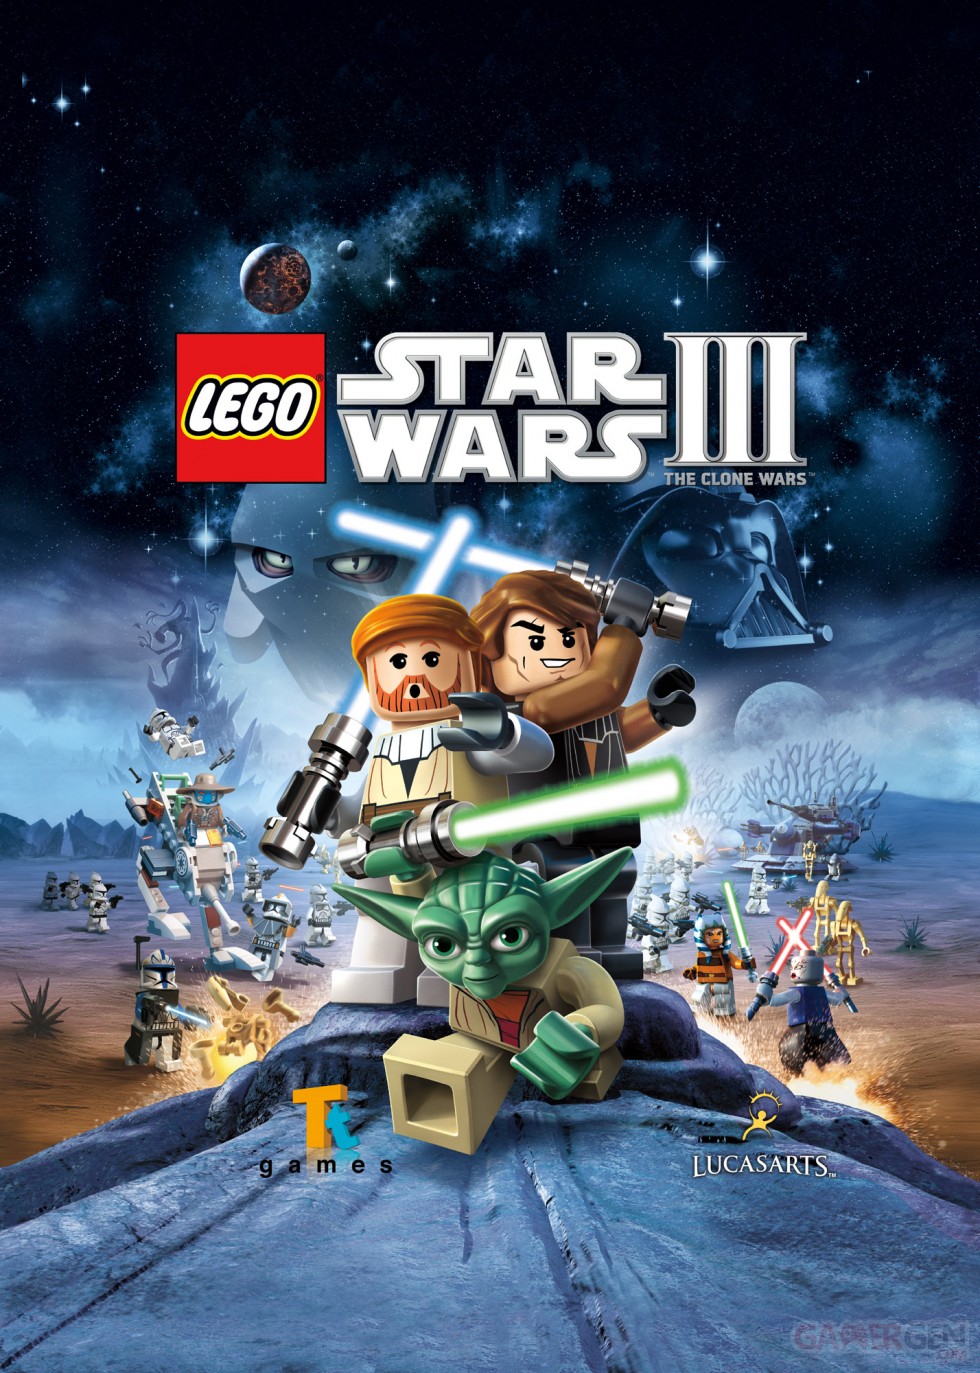 Star-Wars-LEGO-III-Guerre-Clones_1